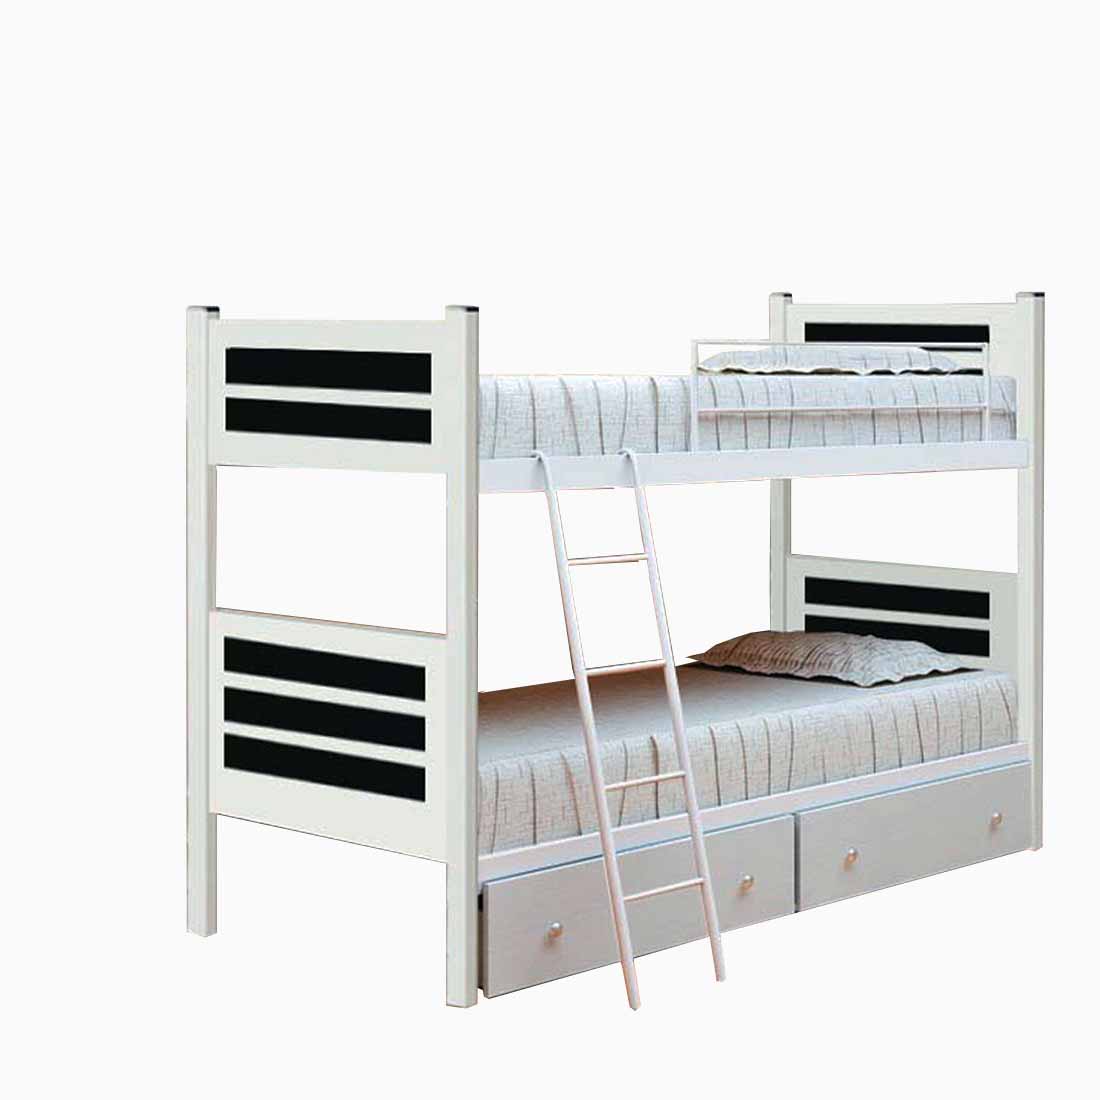 تختخواب دوطبقه مدل سناتور سایز 200 × 90 سانتی متر